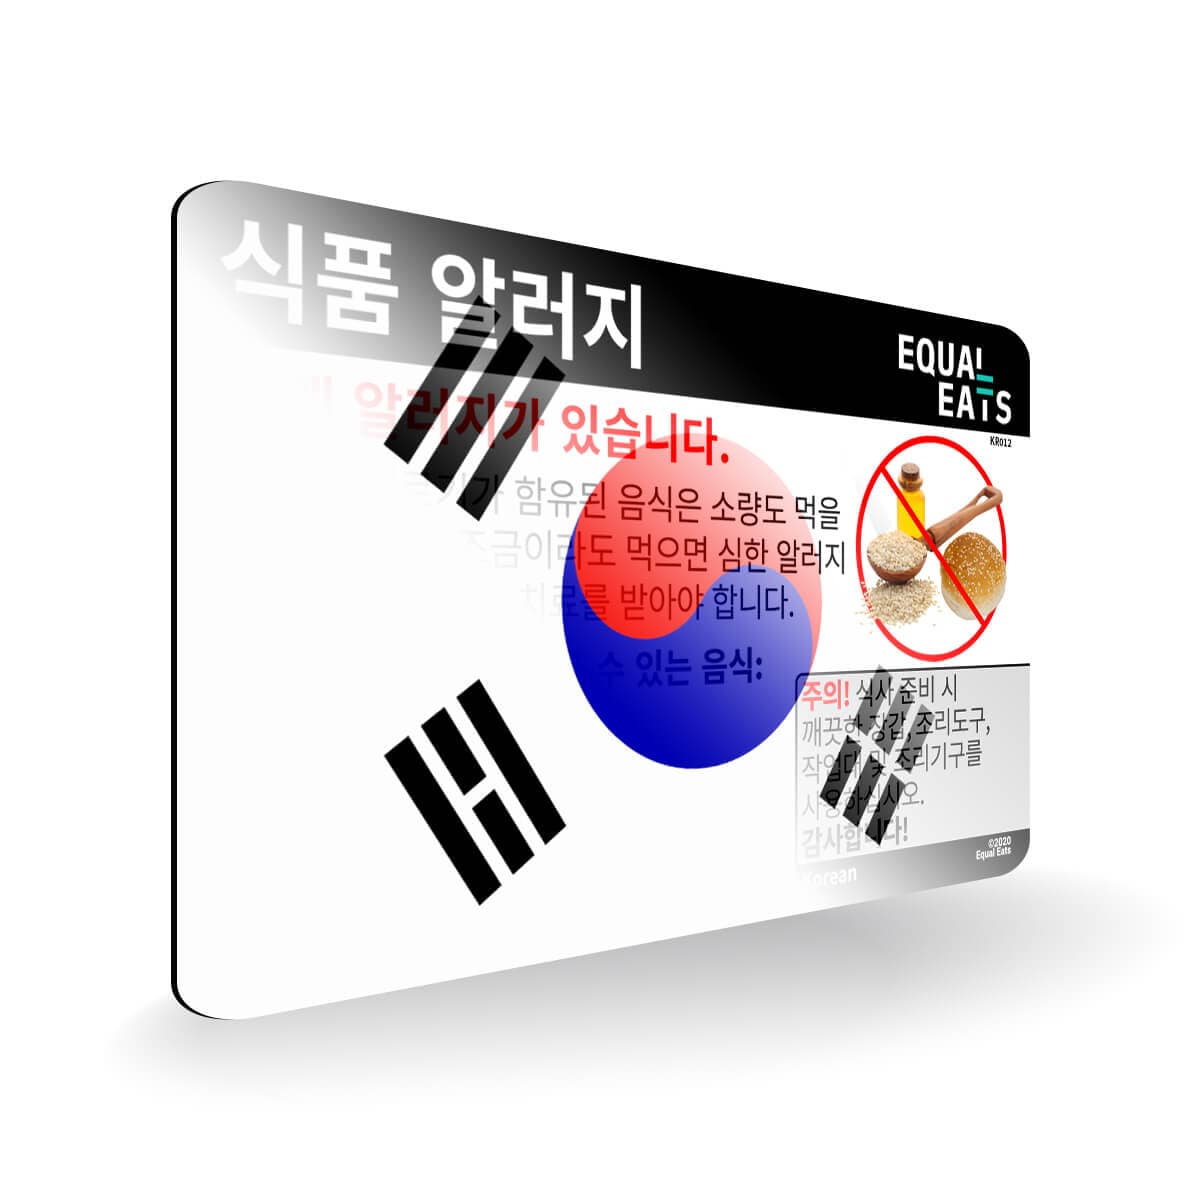 Sesame Allergy in Korean. Sesame Allergy Card for Korea